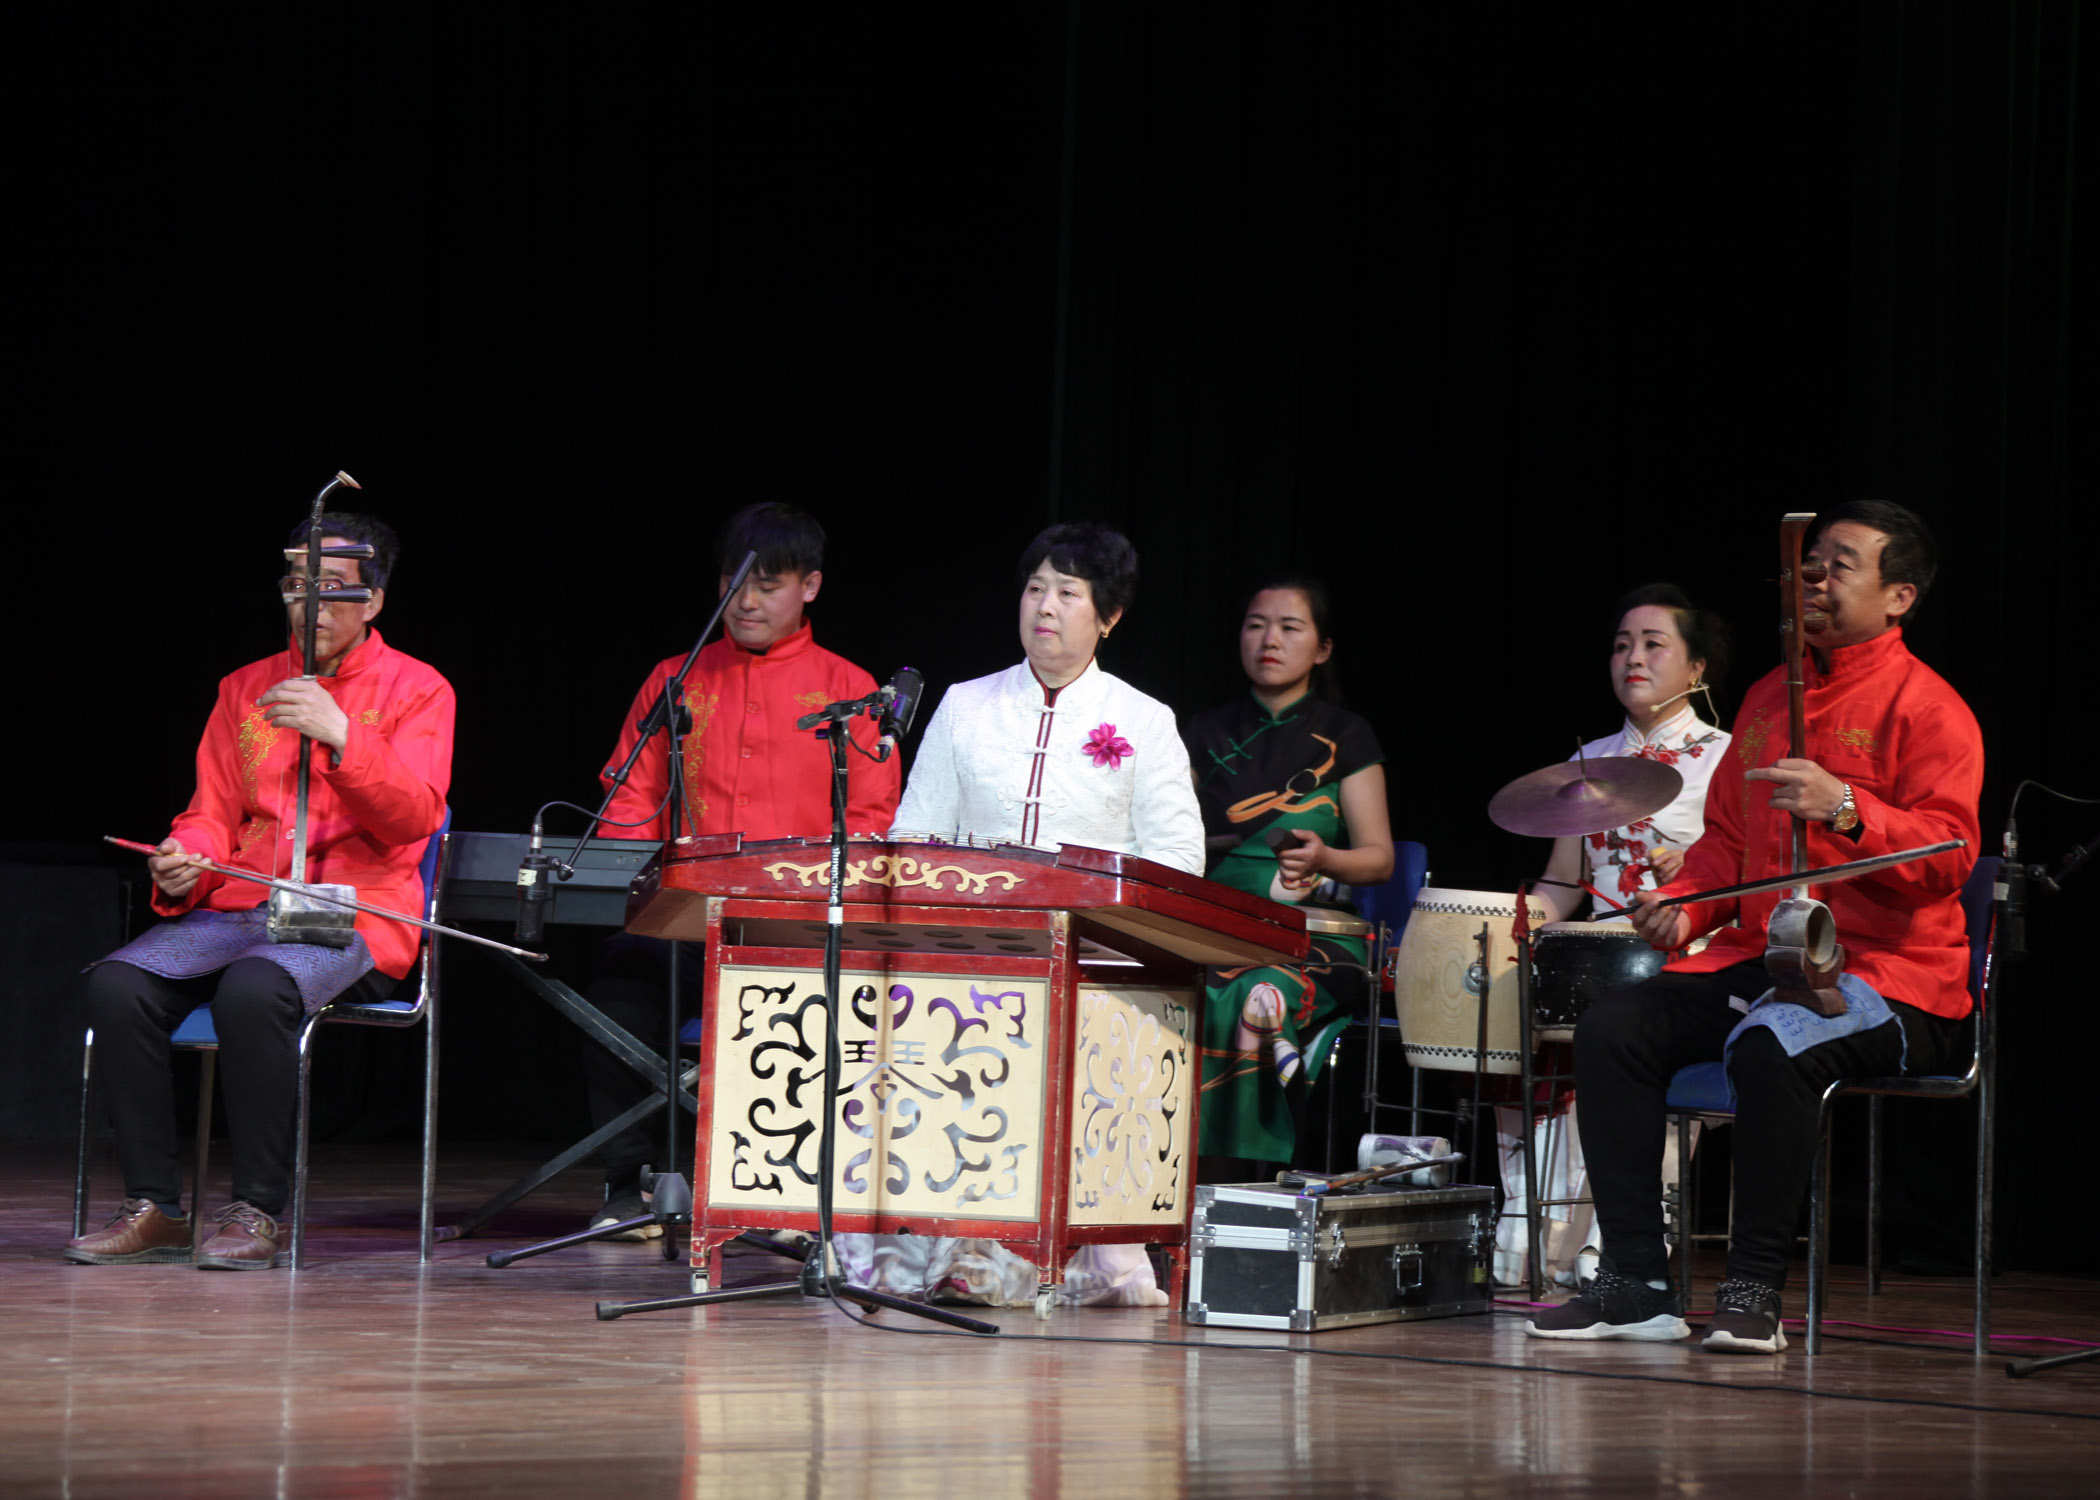 长子县先玲曲艺说唱公司在潞州剧院表演的长子鼓书深受观众喜欢